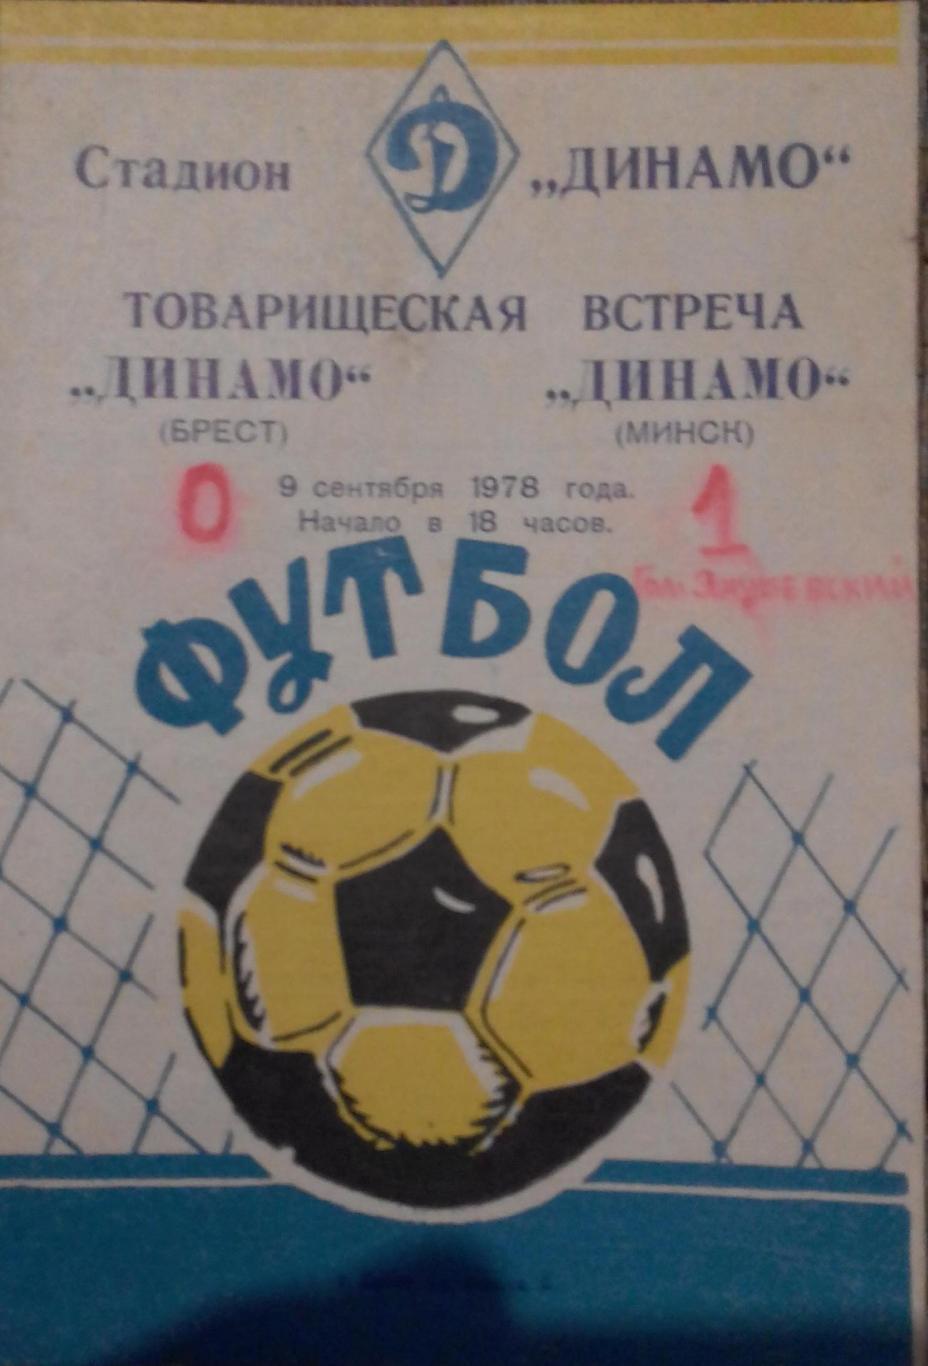 Динамо Брест - Динамо Минск. 09.09.1978